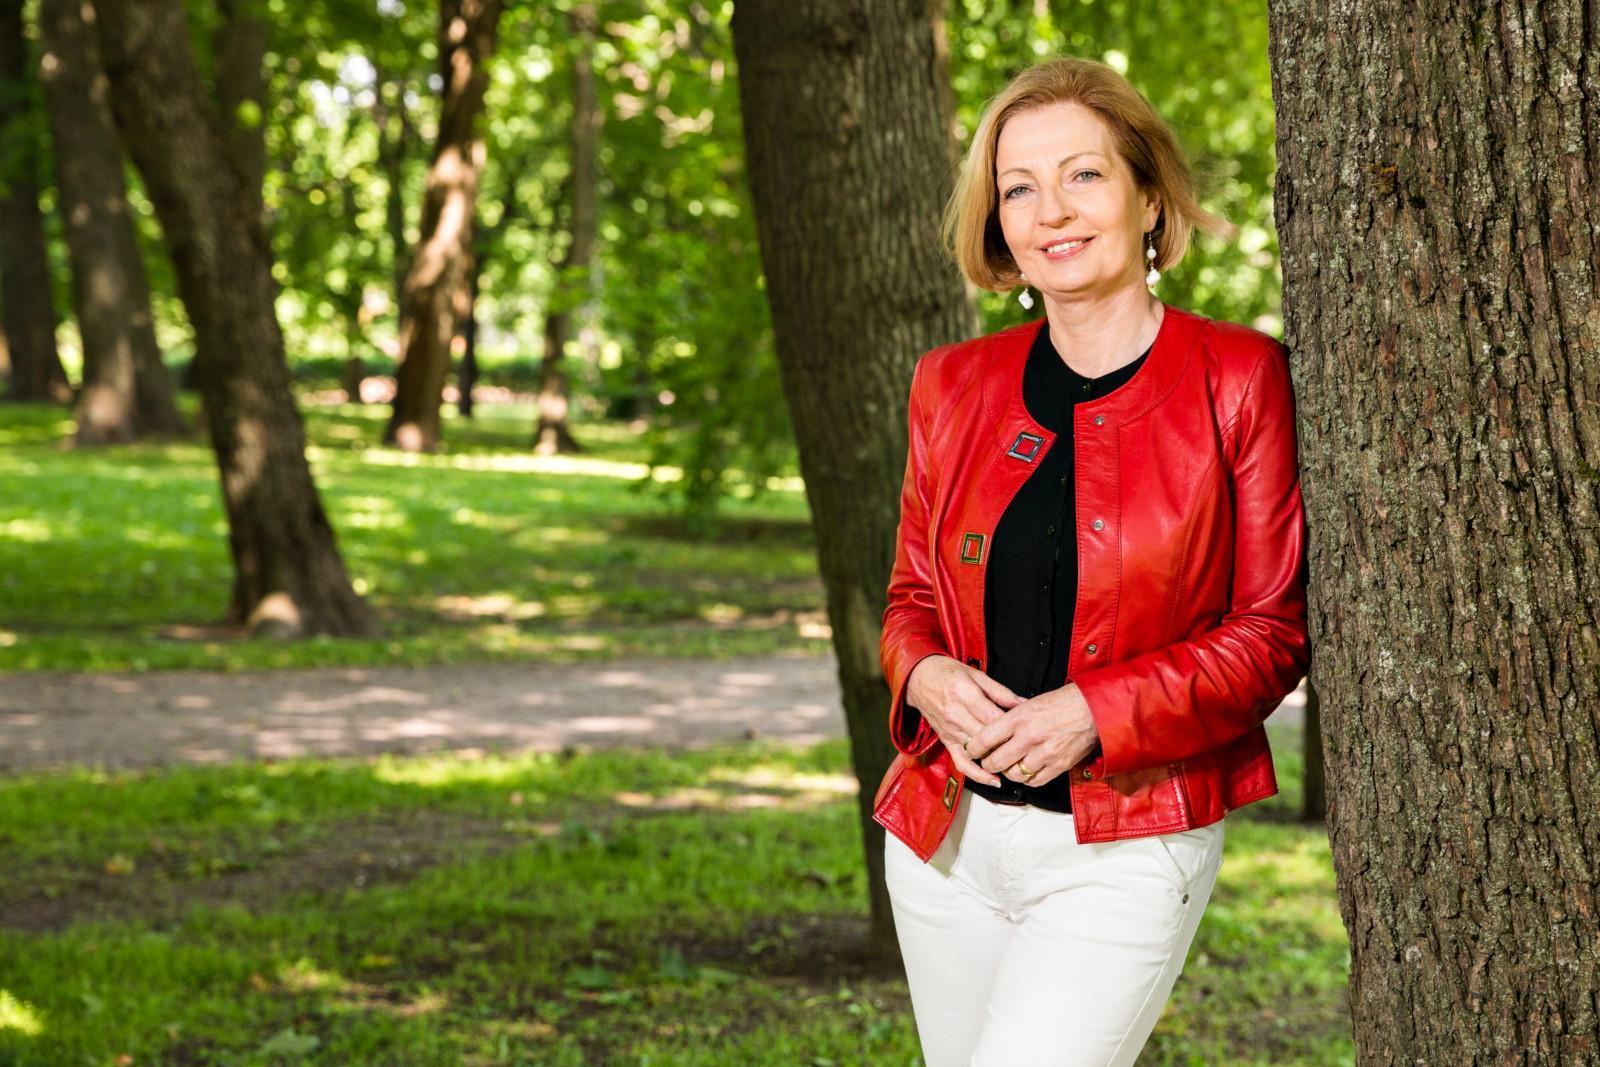 Hyvinvointilomat ry:n puheenjohtaja Anneli Kiljunen nojaa puuhun ja hymyilee aurinkoisessa puistossa.